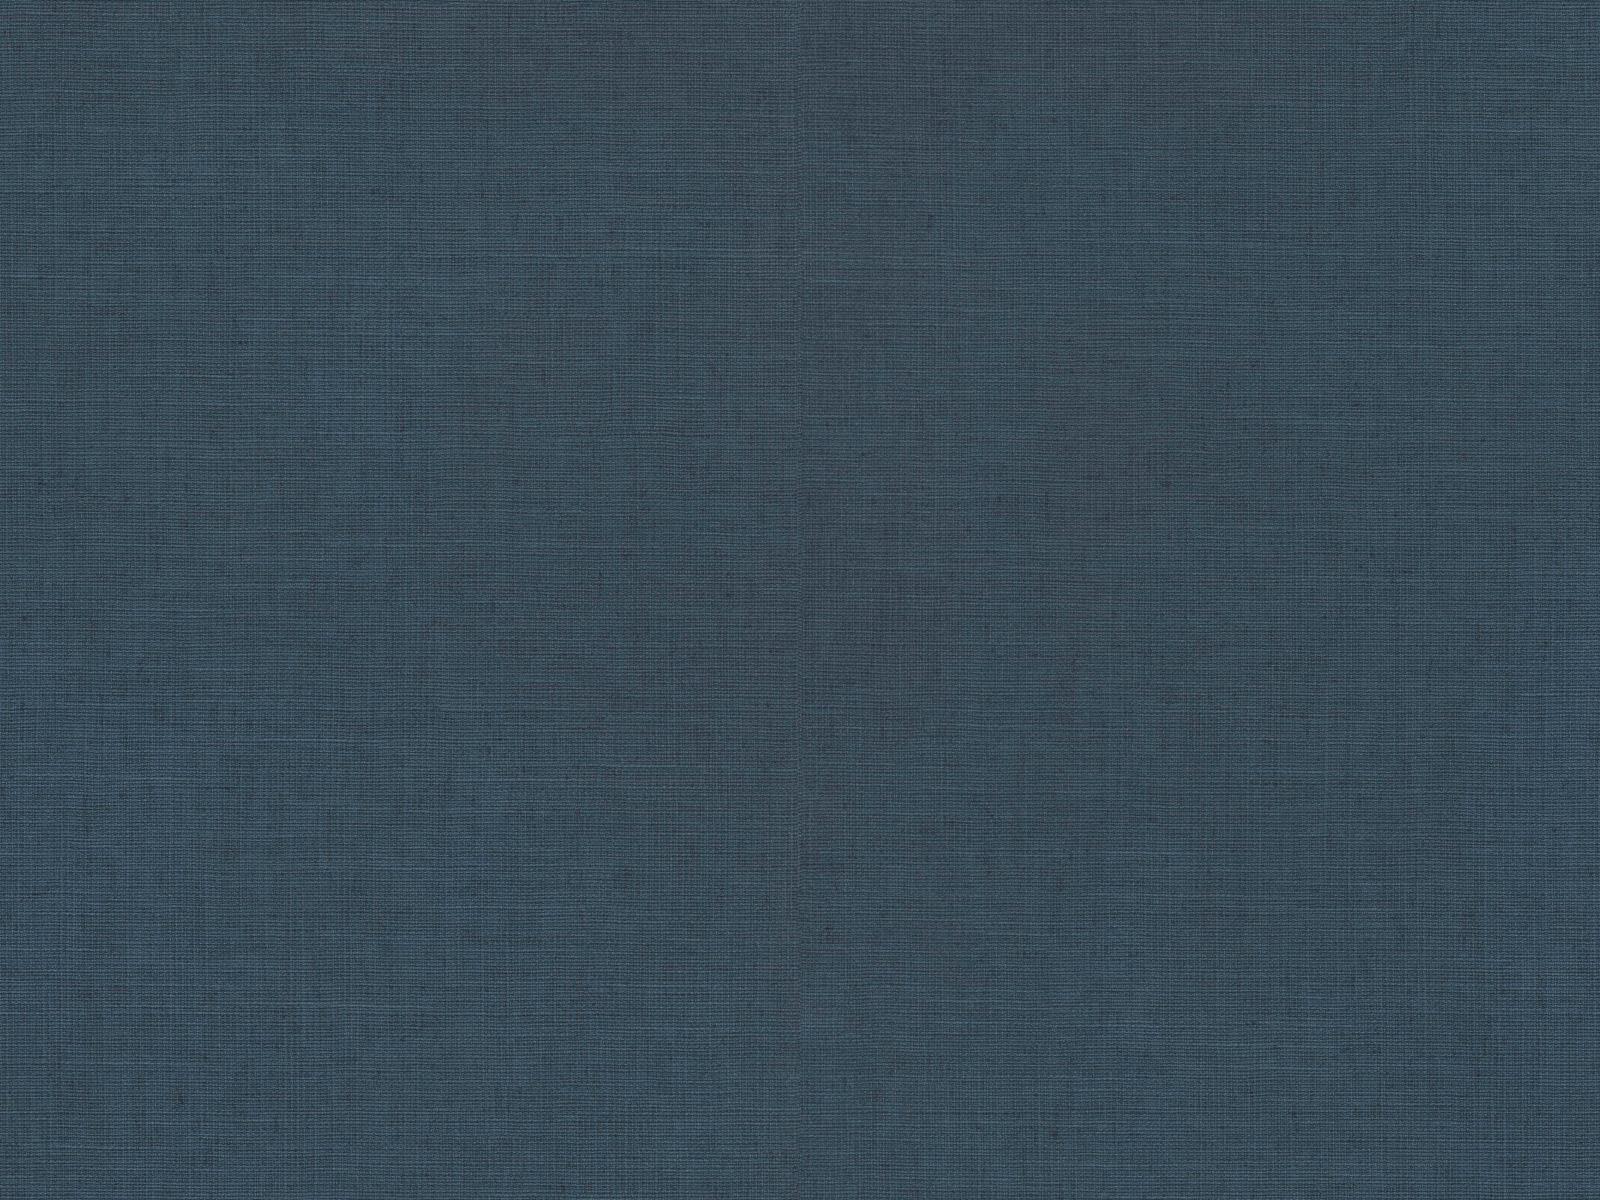 Vliesová tapeta s prirodzenou textilnou štruktúrou v oceľovej farbe, ER-601638